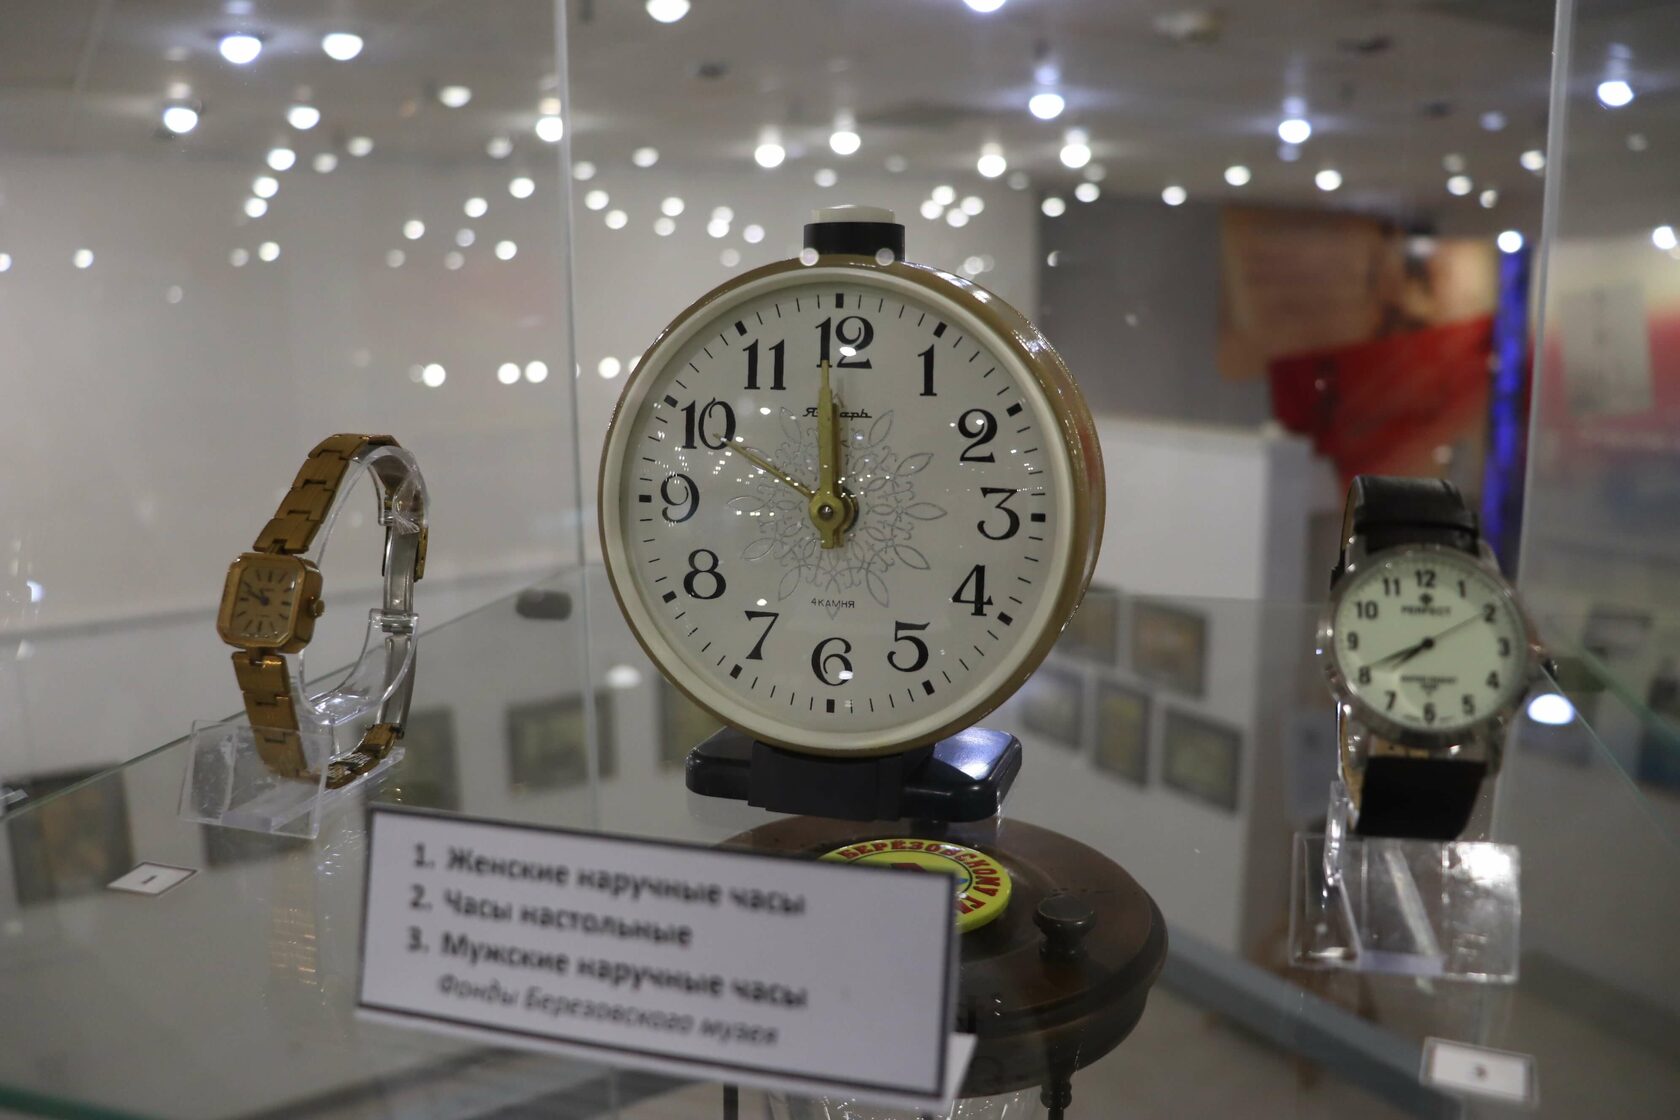 Женские наручные часы, часы настольные, мужские наручные часы. Фонды Березовского музея